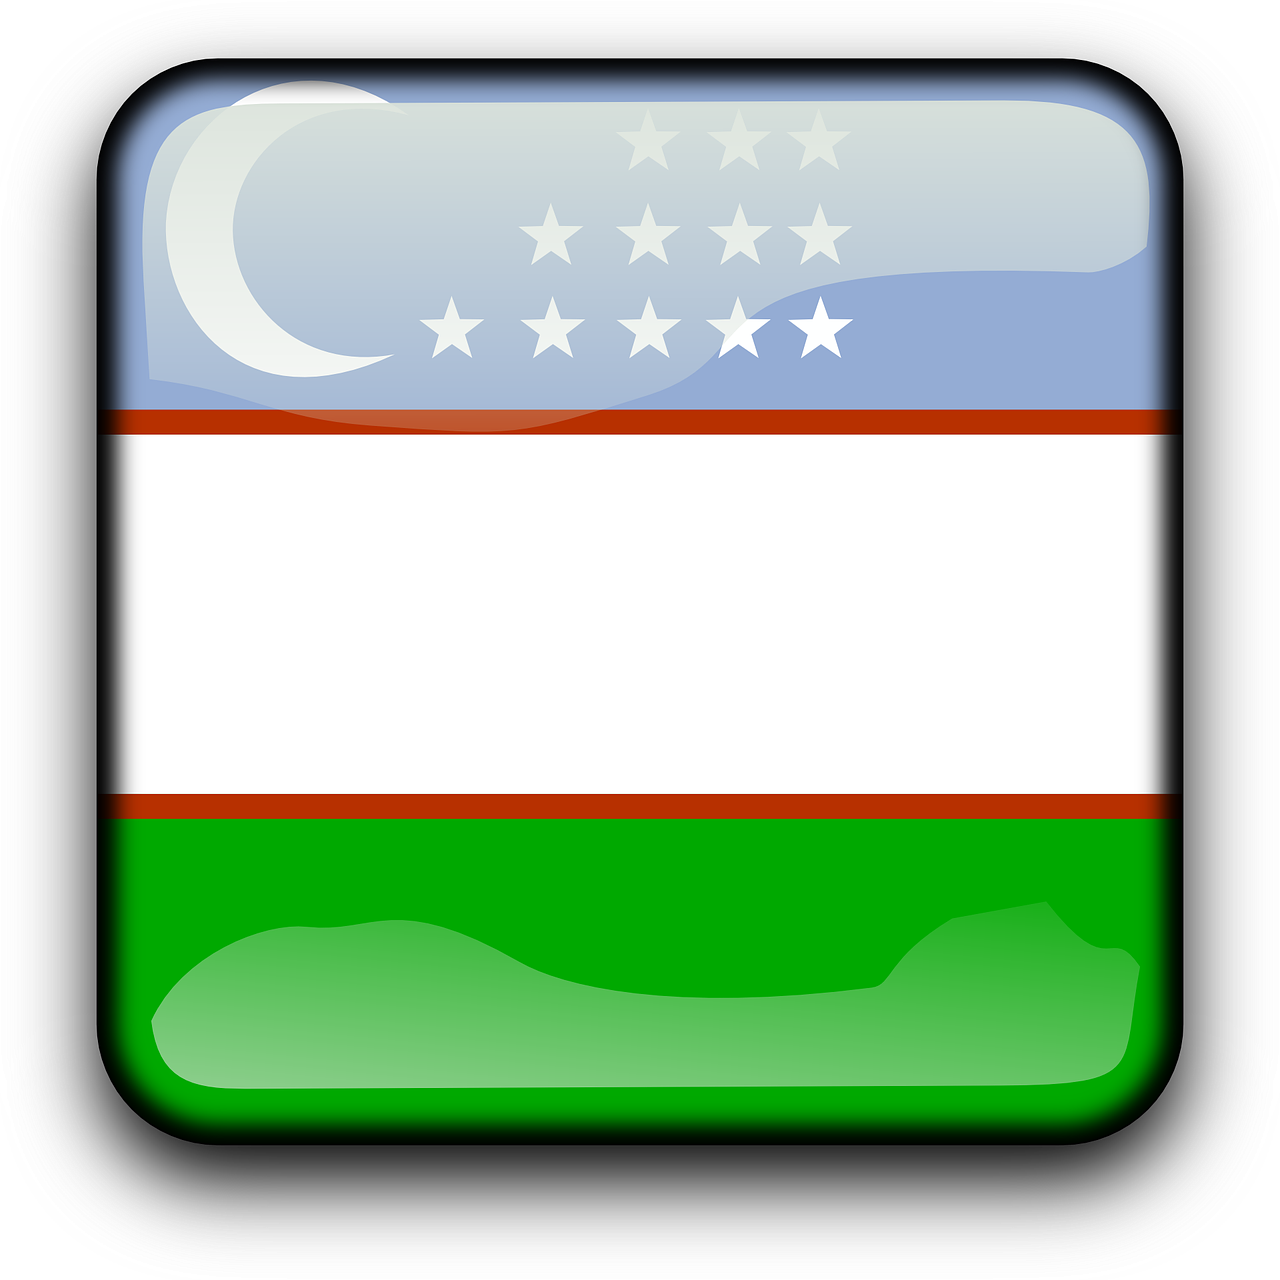 Узбекистан флаг. Флаг Узбекистана. Флаг Республики Узбекистан Штандарт. Уз флаг Узбекистана. Флаг Узбекистана иконка.